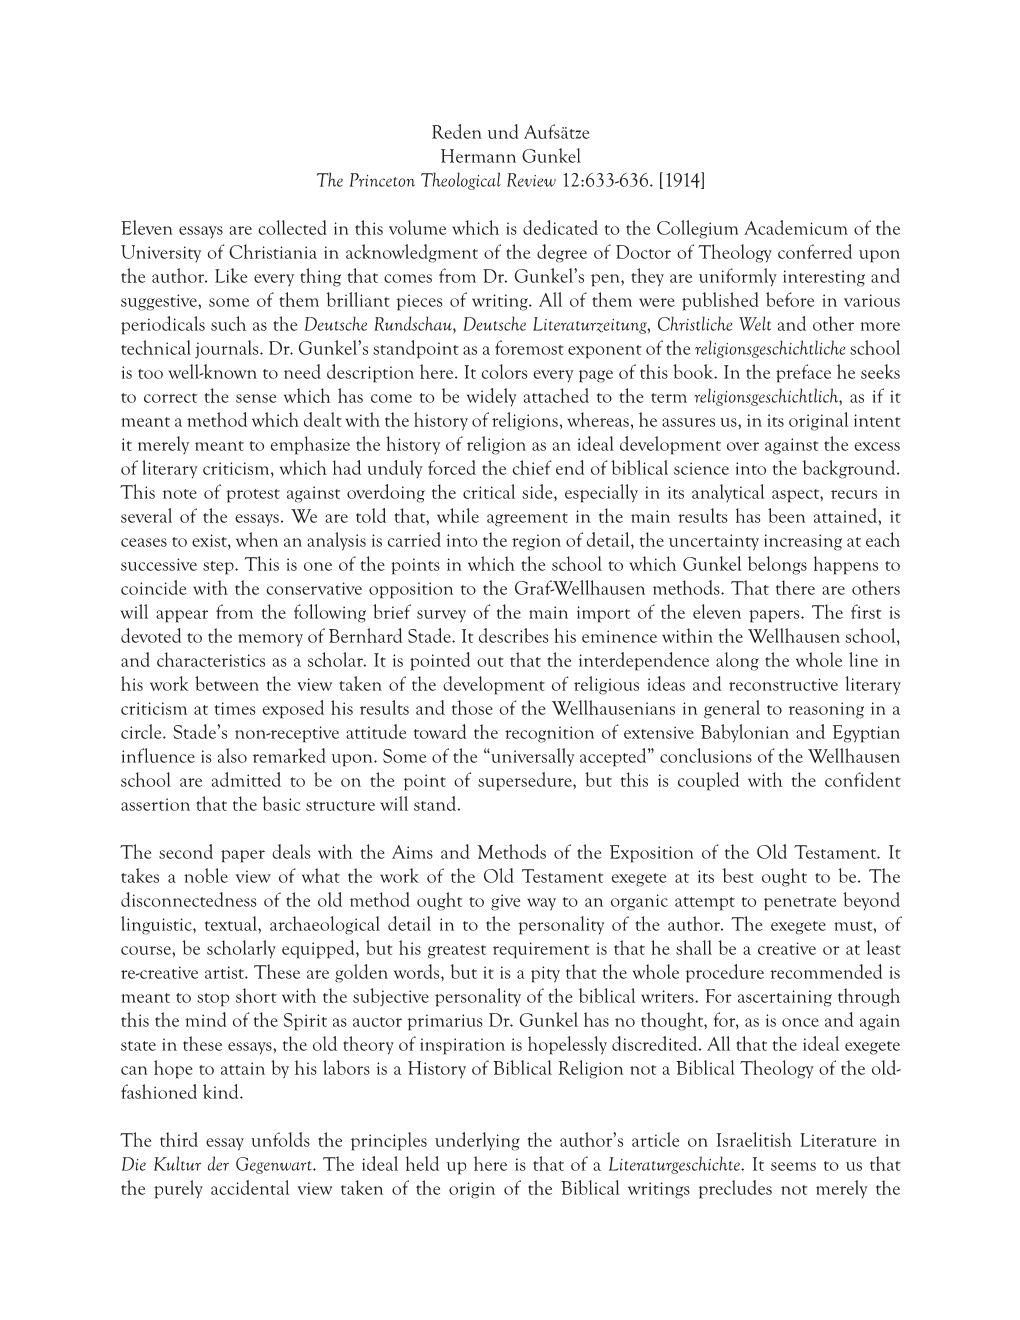 Reden Und Aufsätze Hermann Gunkel the Princeton Theological Review 12:633-636